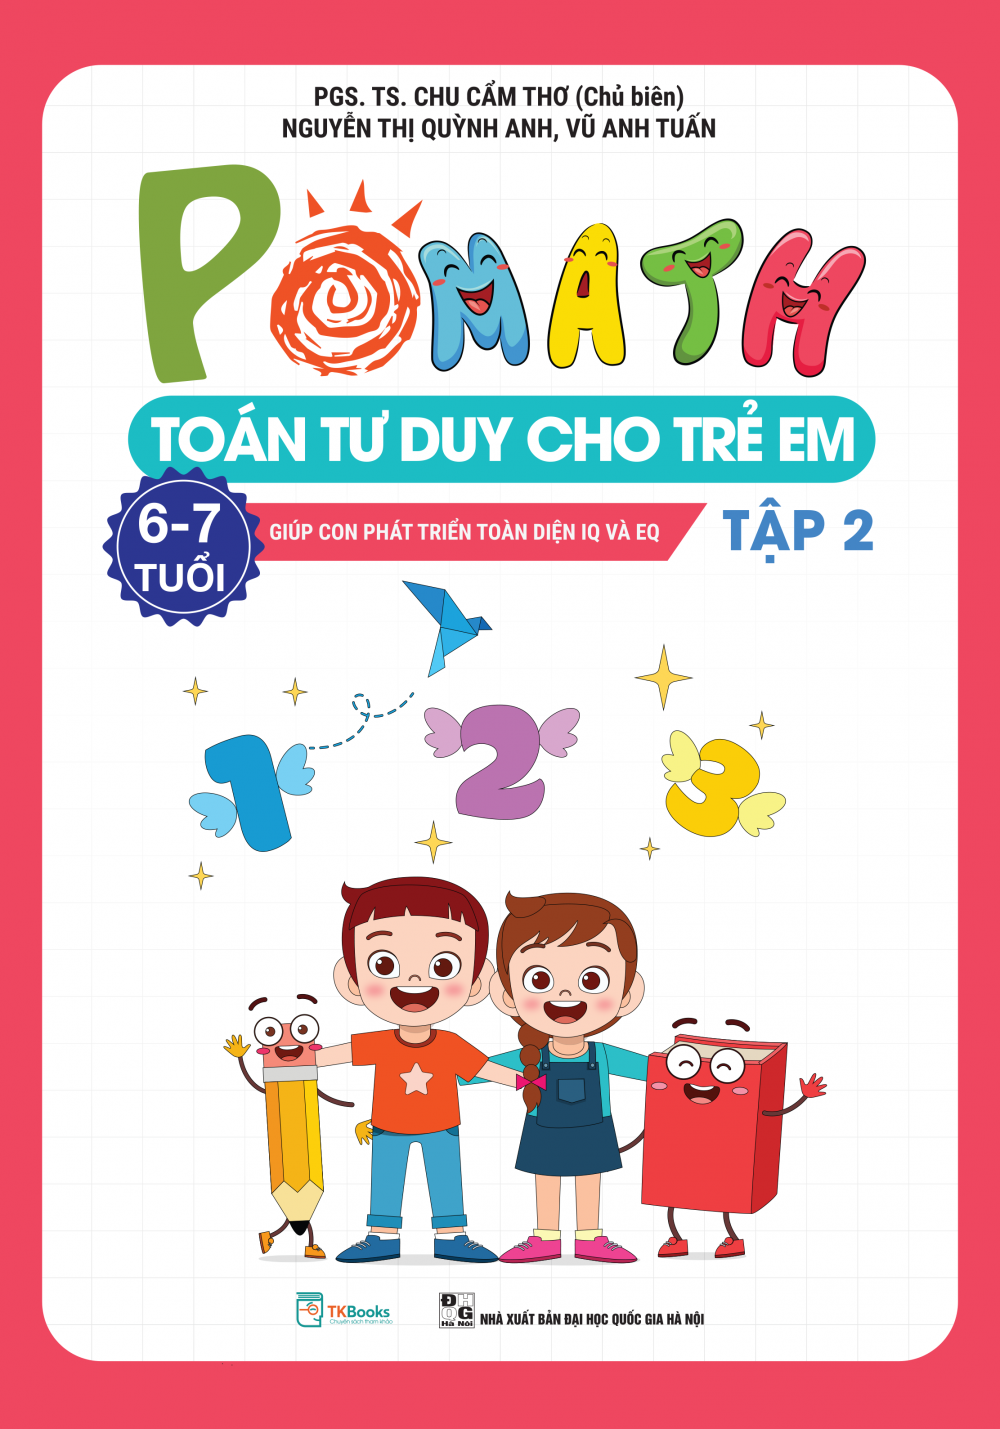 Pomath – Toán tư duy cho trẻ em 6 – 7 tuổi - Tập 2